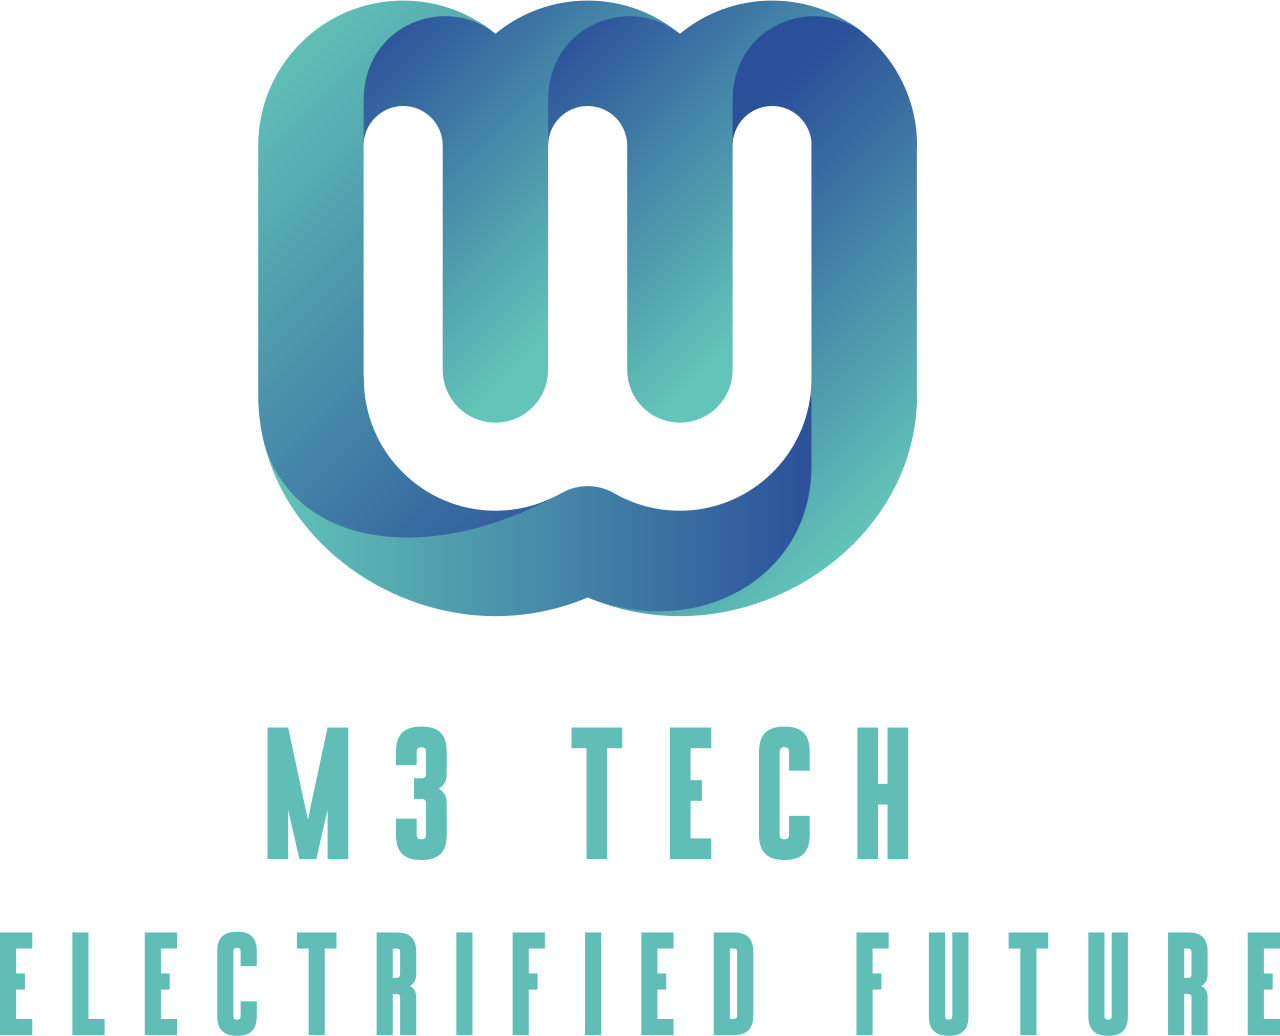 M3 Tech's logo